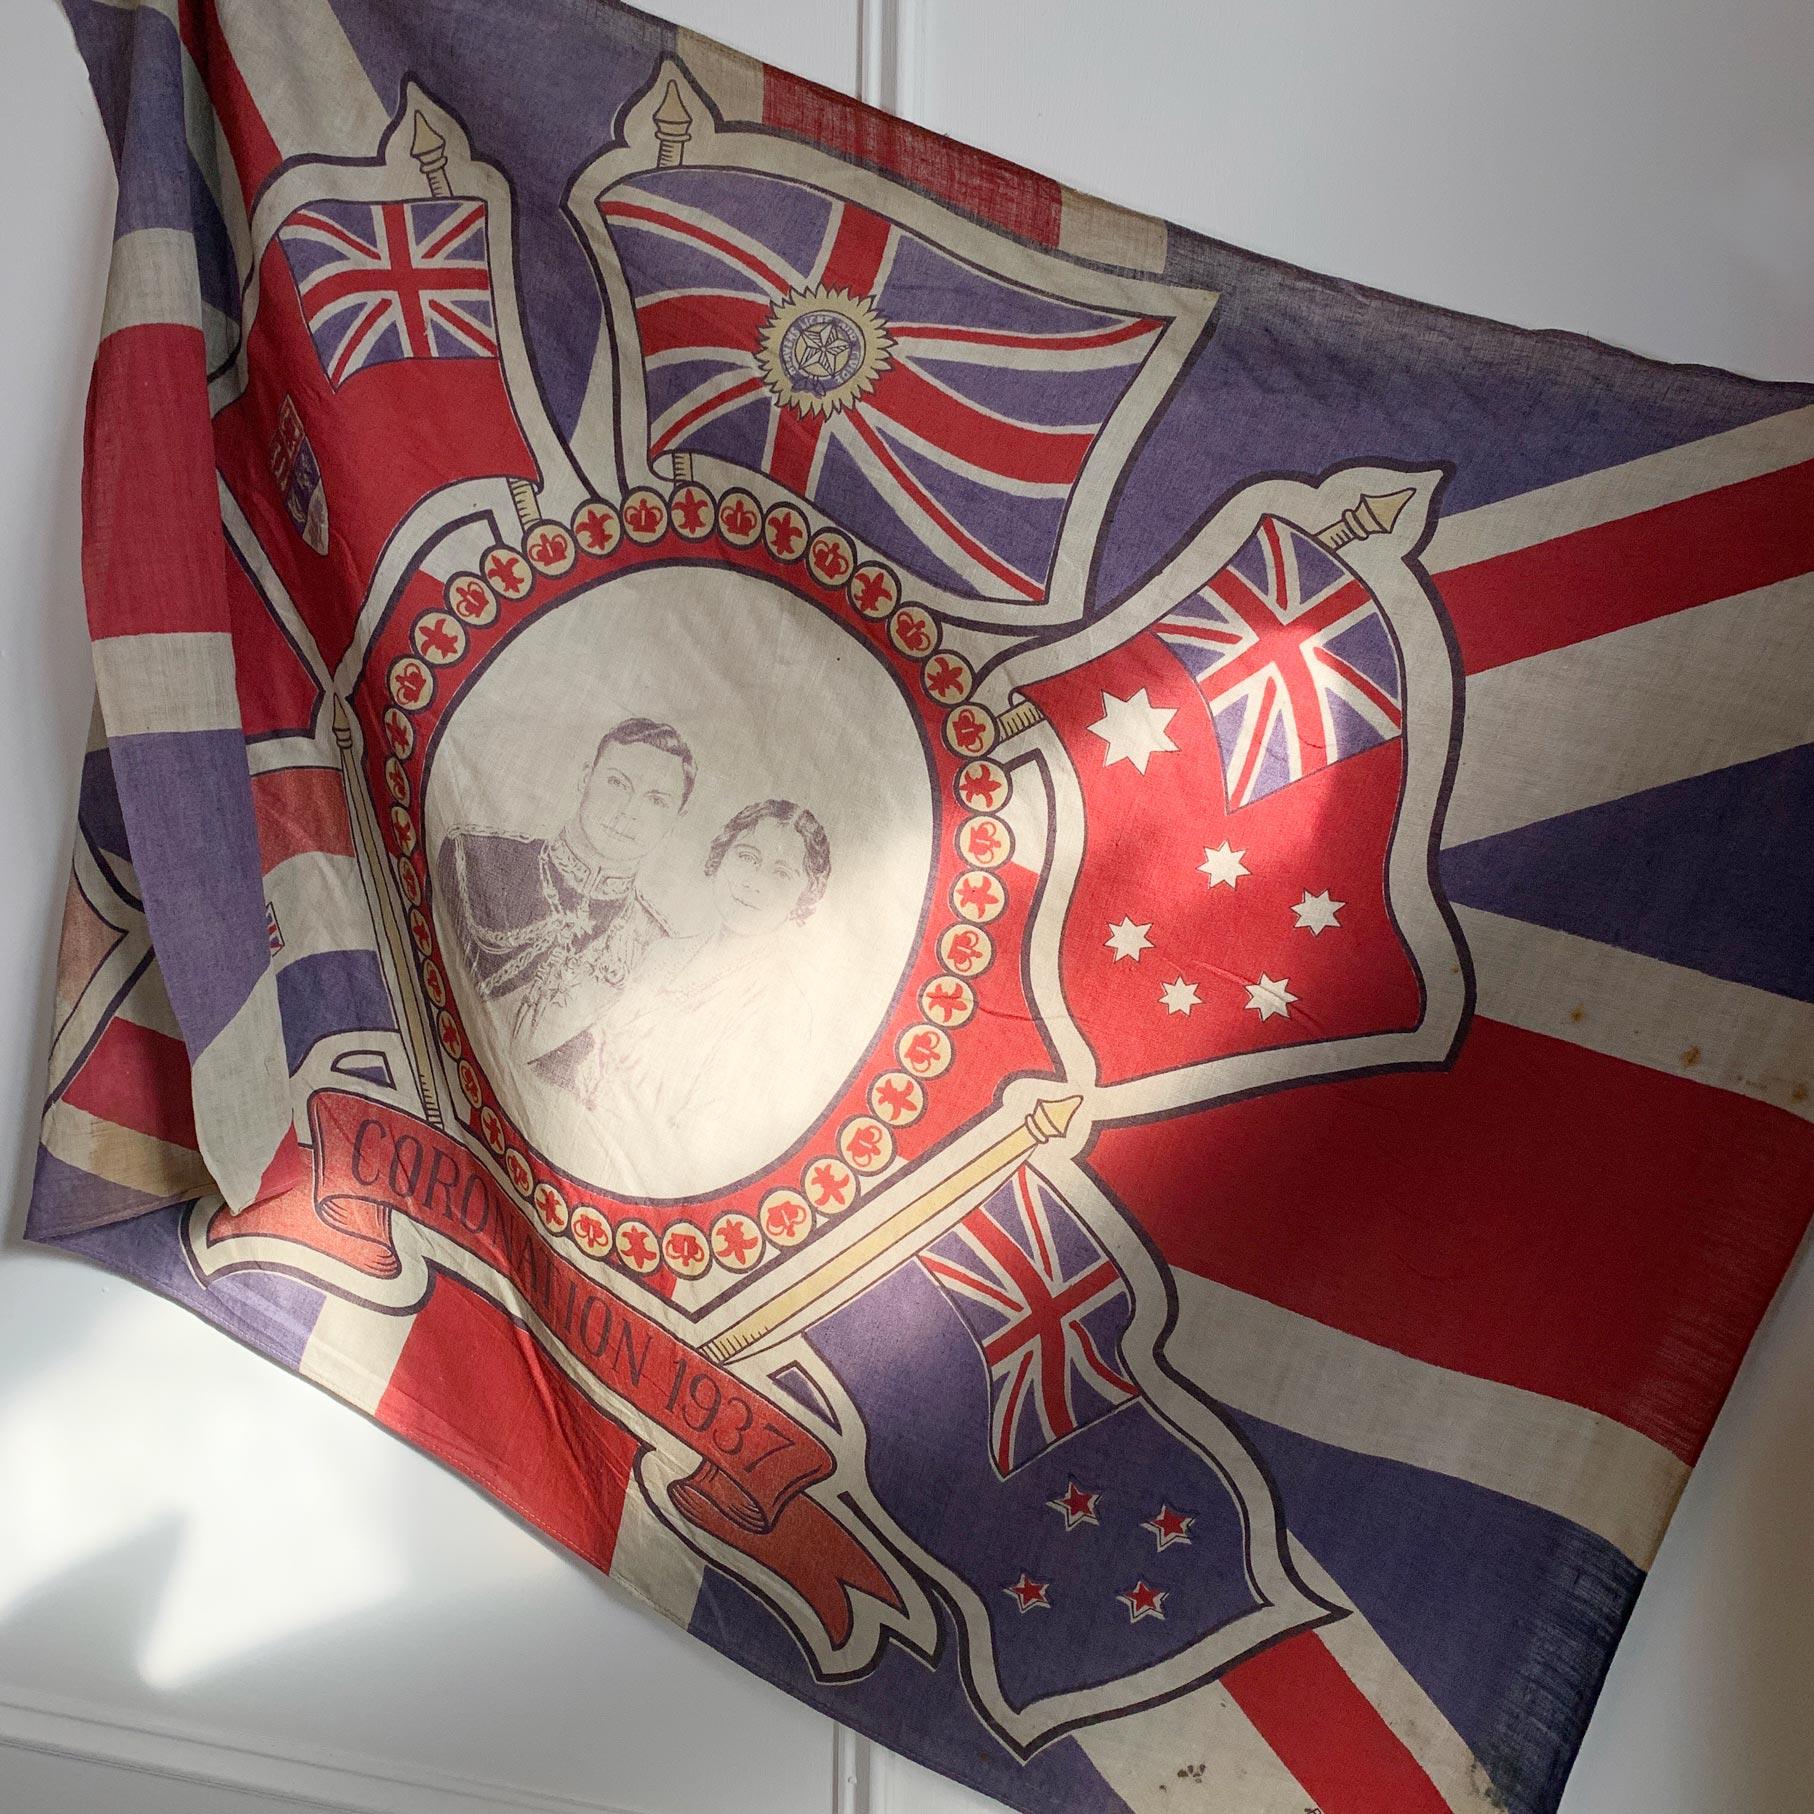 Famille royale britannique

Un drapeau de couronnement royal rare et historique du couronnement de S.A.R. le Roi George VI en 1937. Le drapeau montre le roi George VI aux côtés de la reine Elizabeth, la reine mère.
    
George VI (Albert Frederick